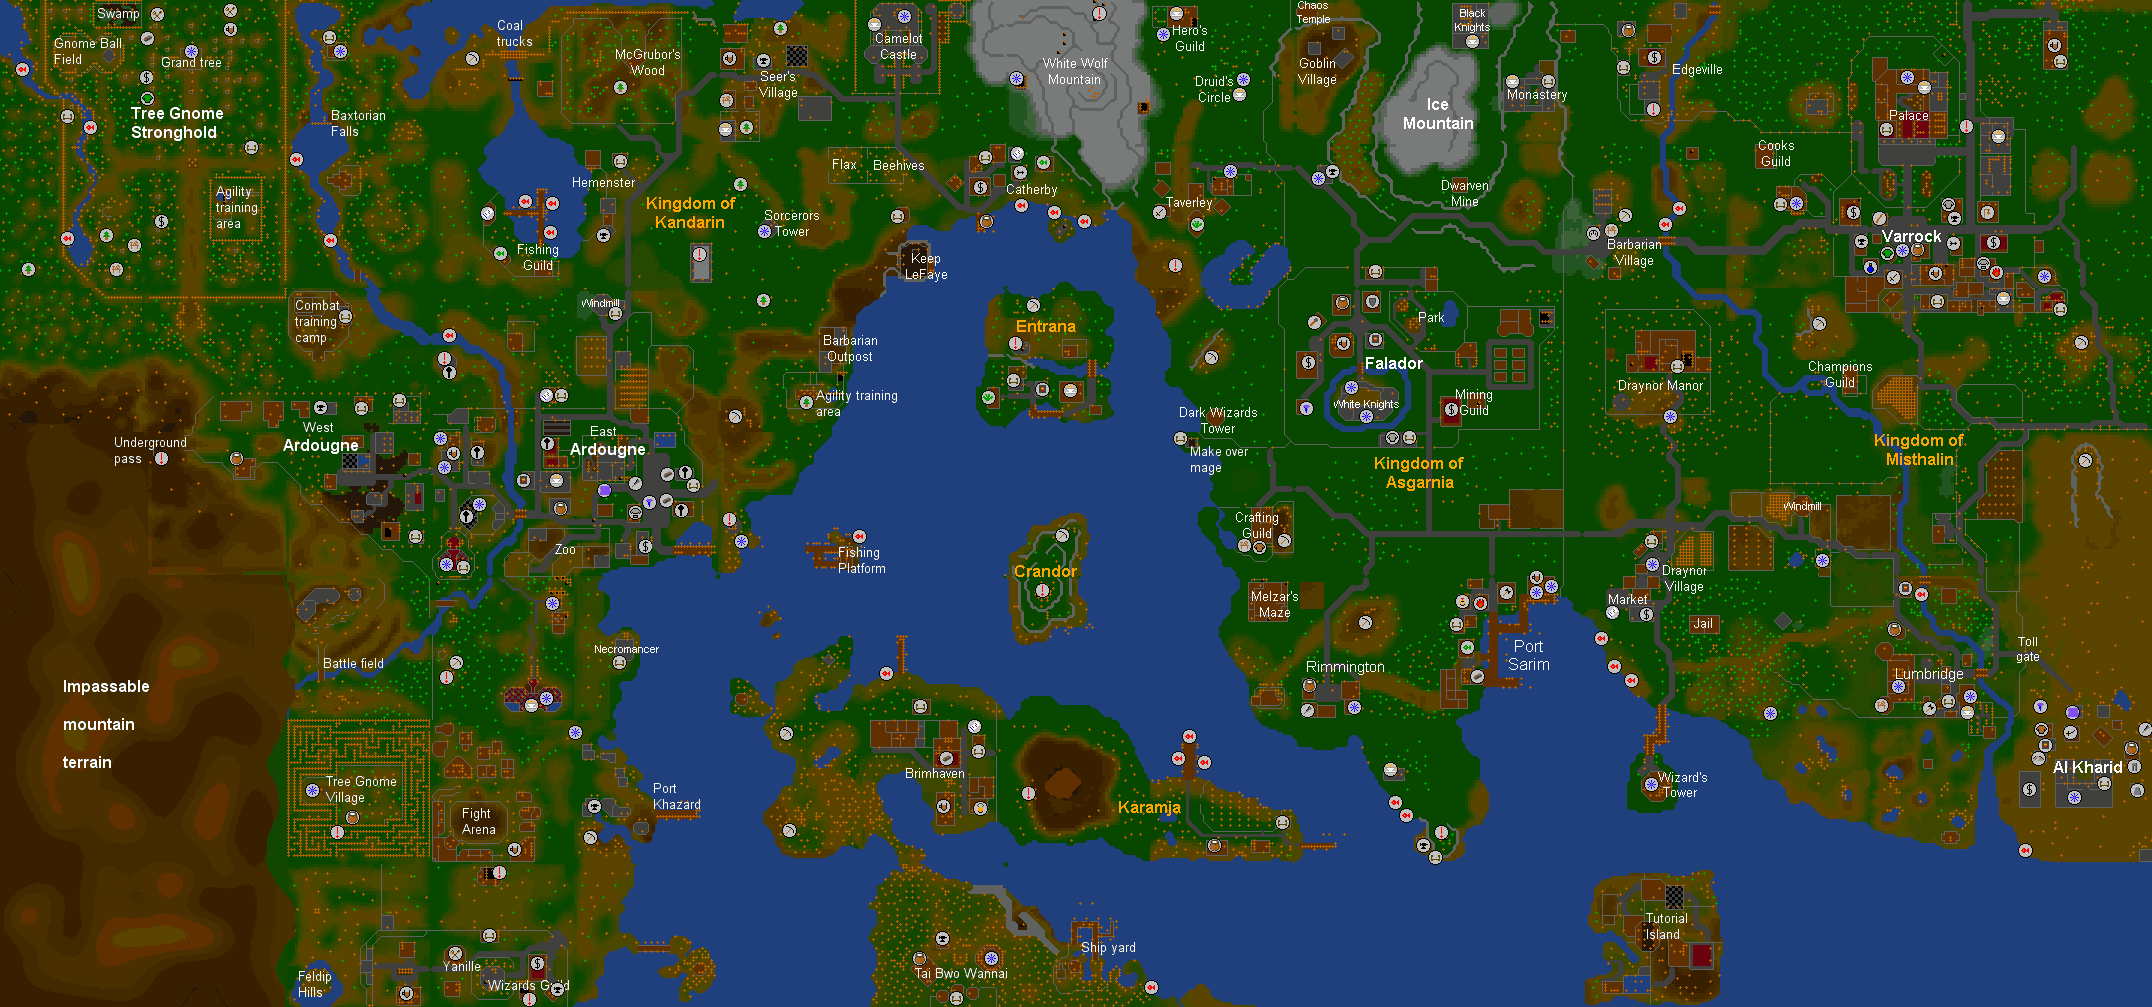 RuneScape Map